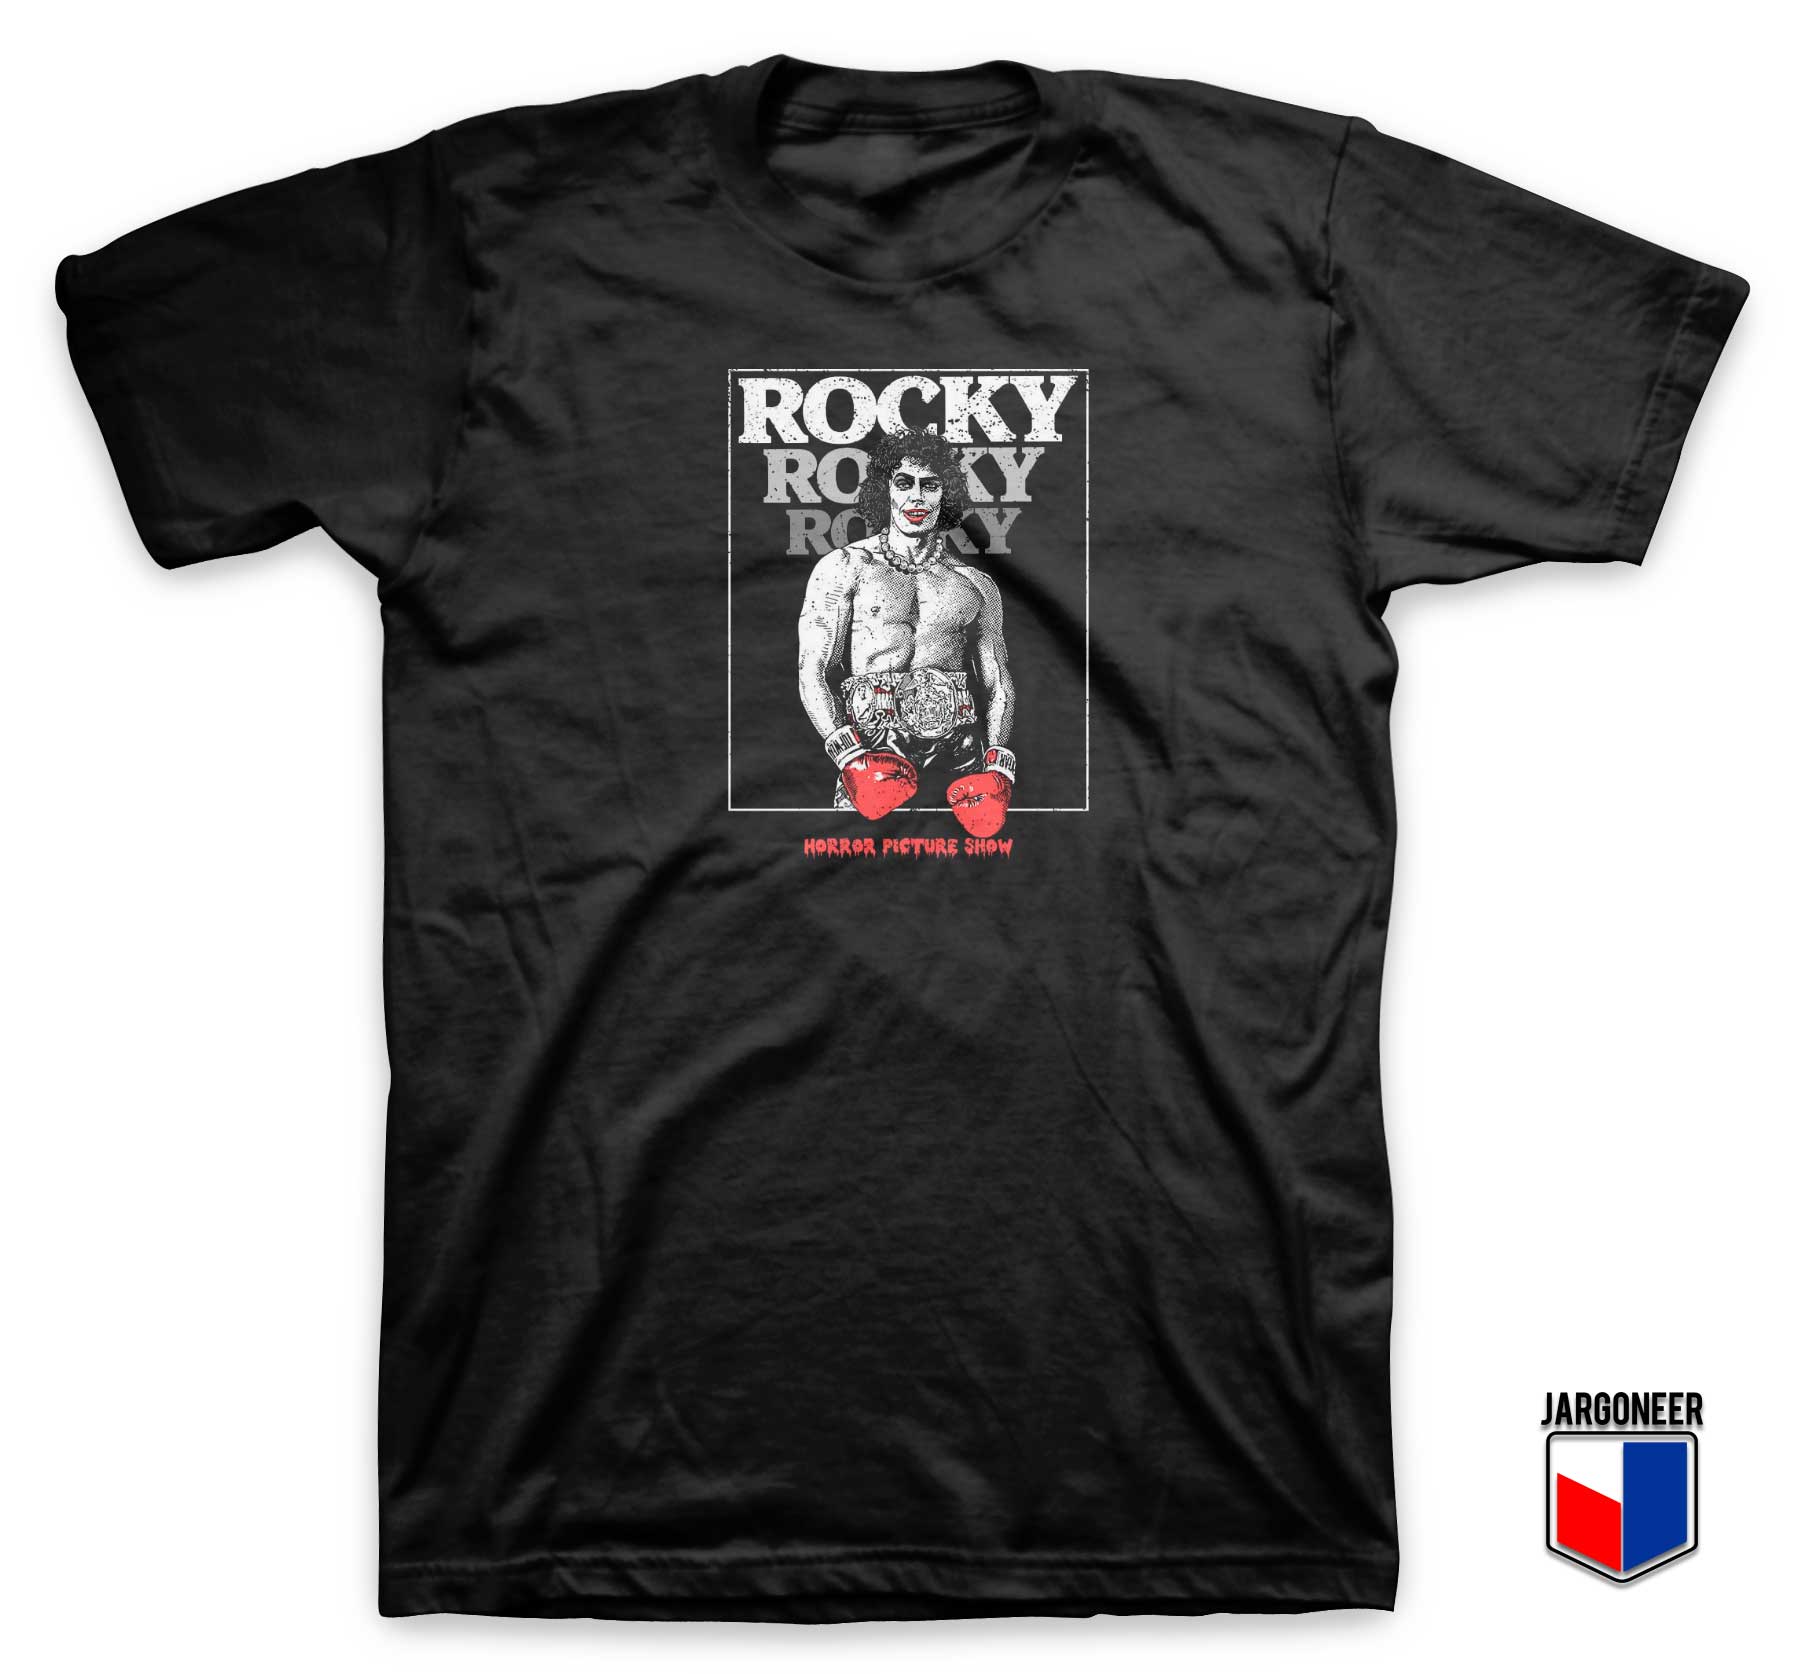 Rocky Horror Championship T Shirt - Shop Unique Graphic Cool Shirt Designs